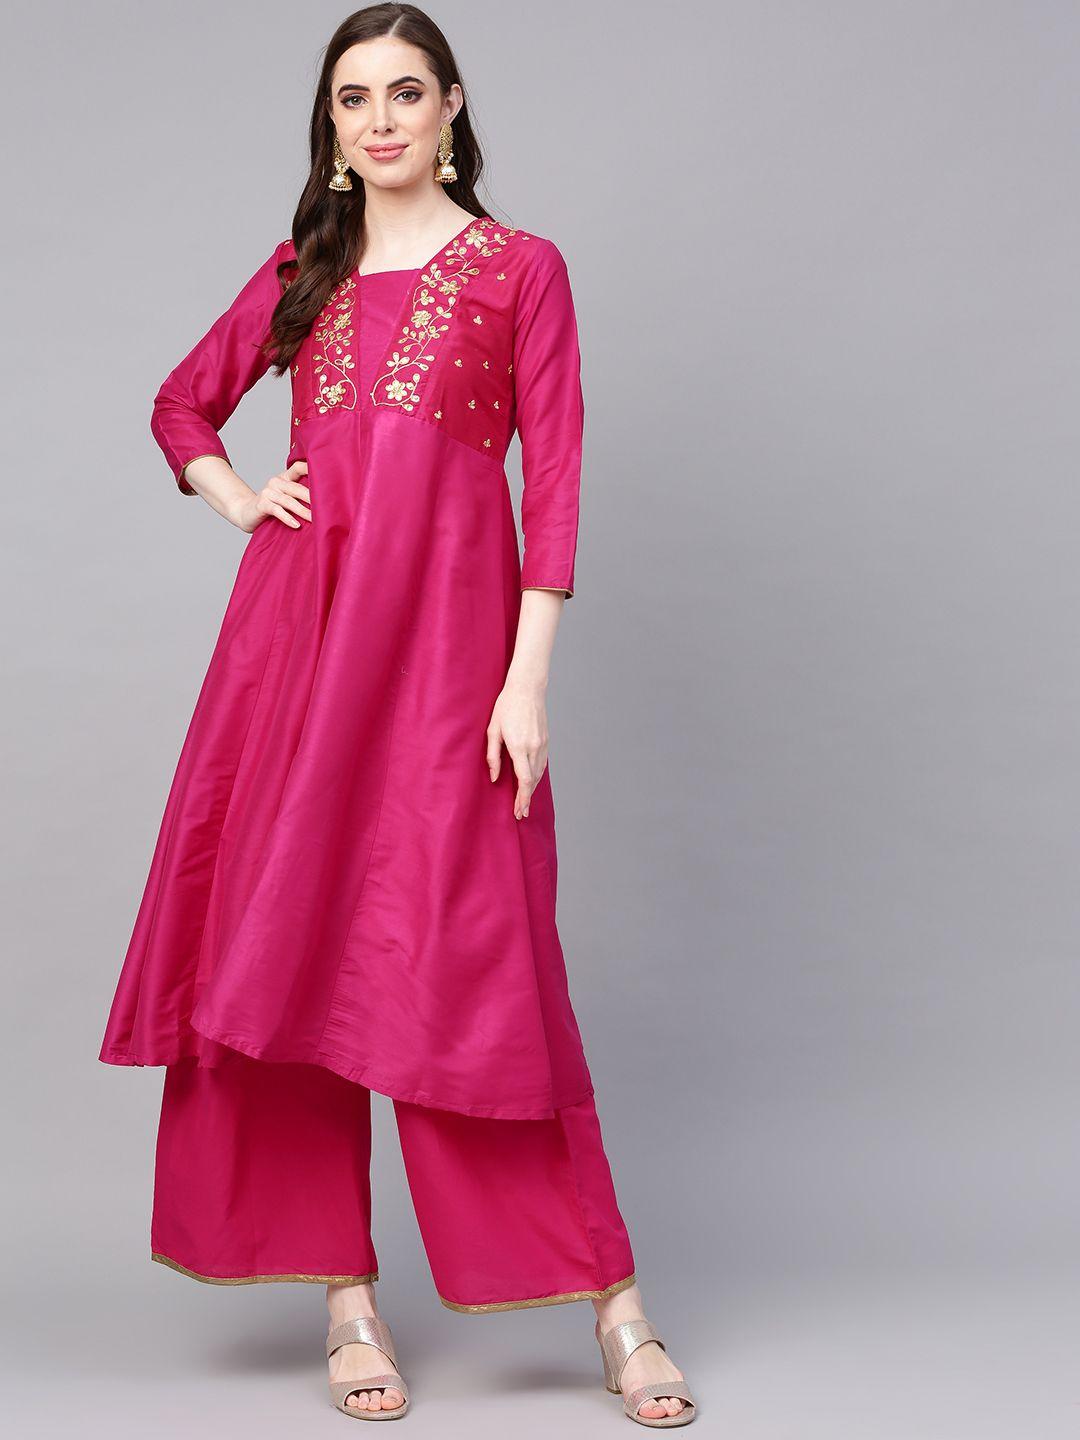 bhama couture women fuchsia pink yoke design anarkali kurta with palazzos